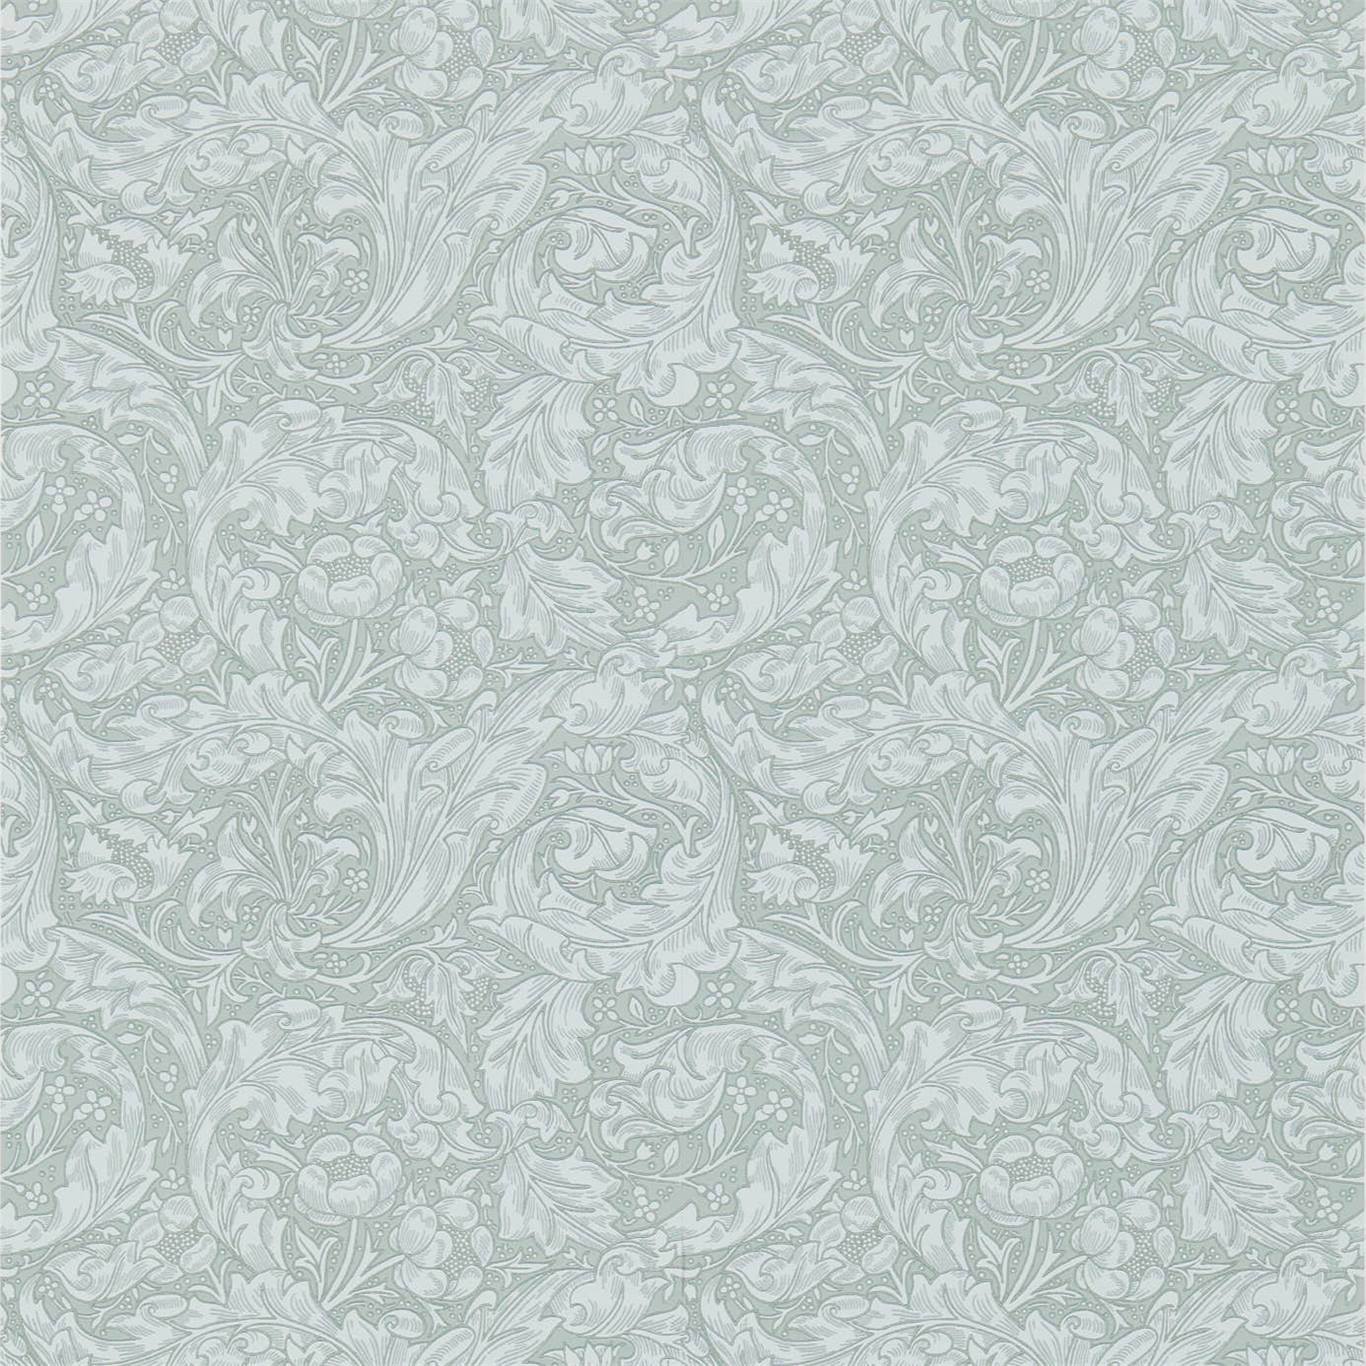 Bachelors Button Silver Wallpaper DCMW216824 by Morris & Co